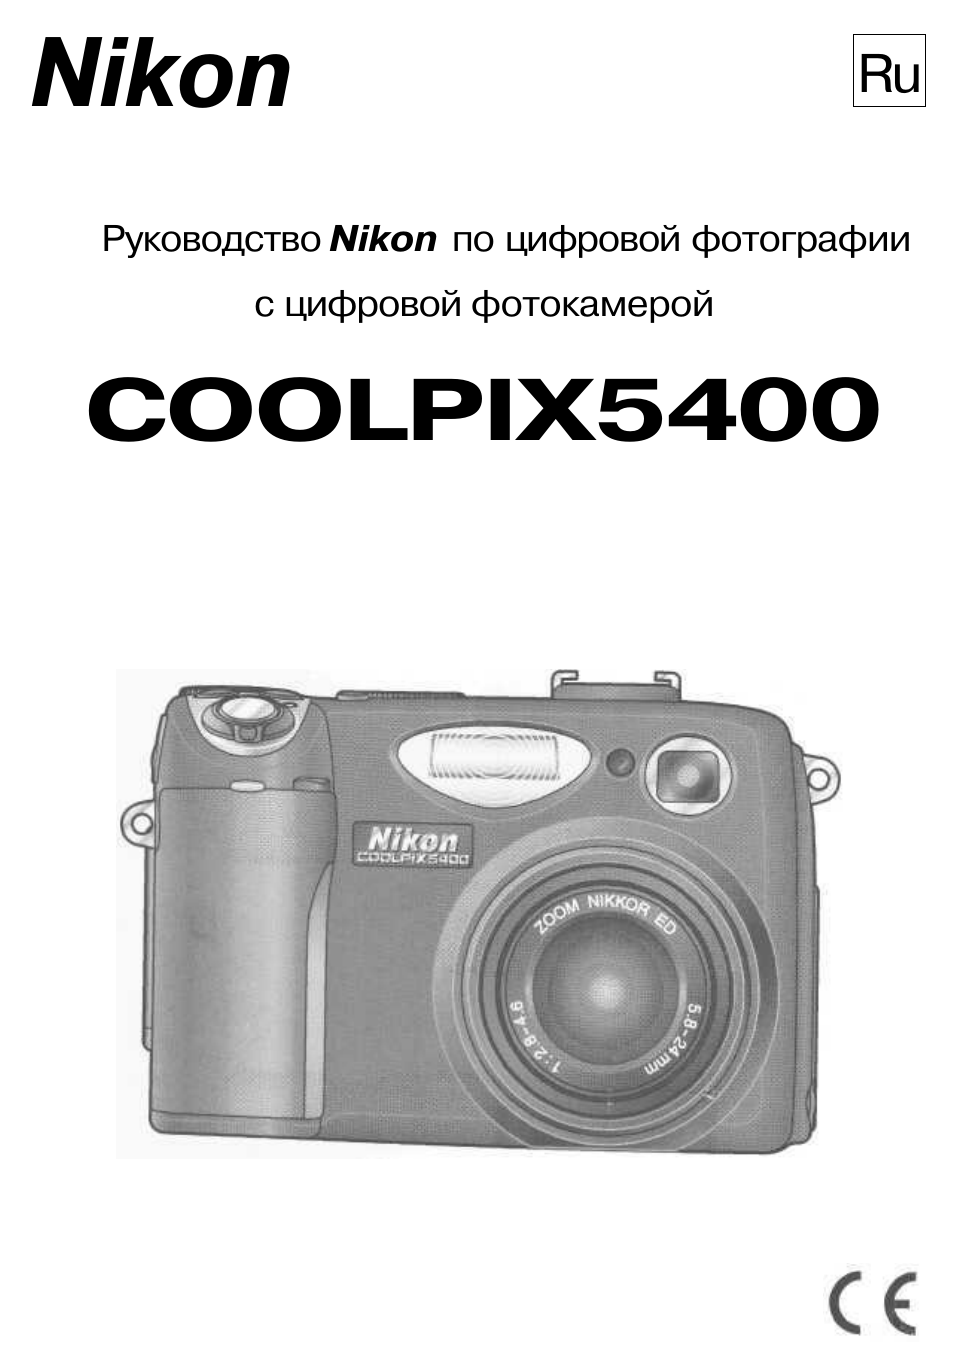 Инструкция по эксплуатации Nikon Coolpix 5400 | 171 cтраница